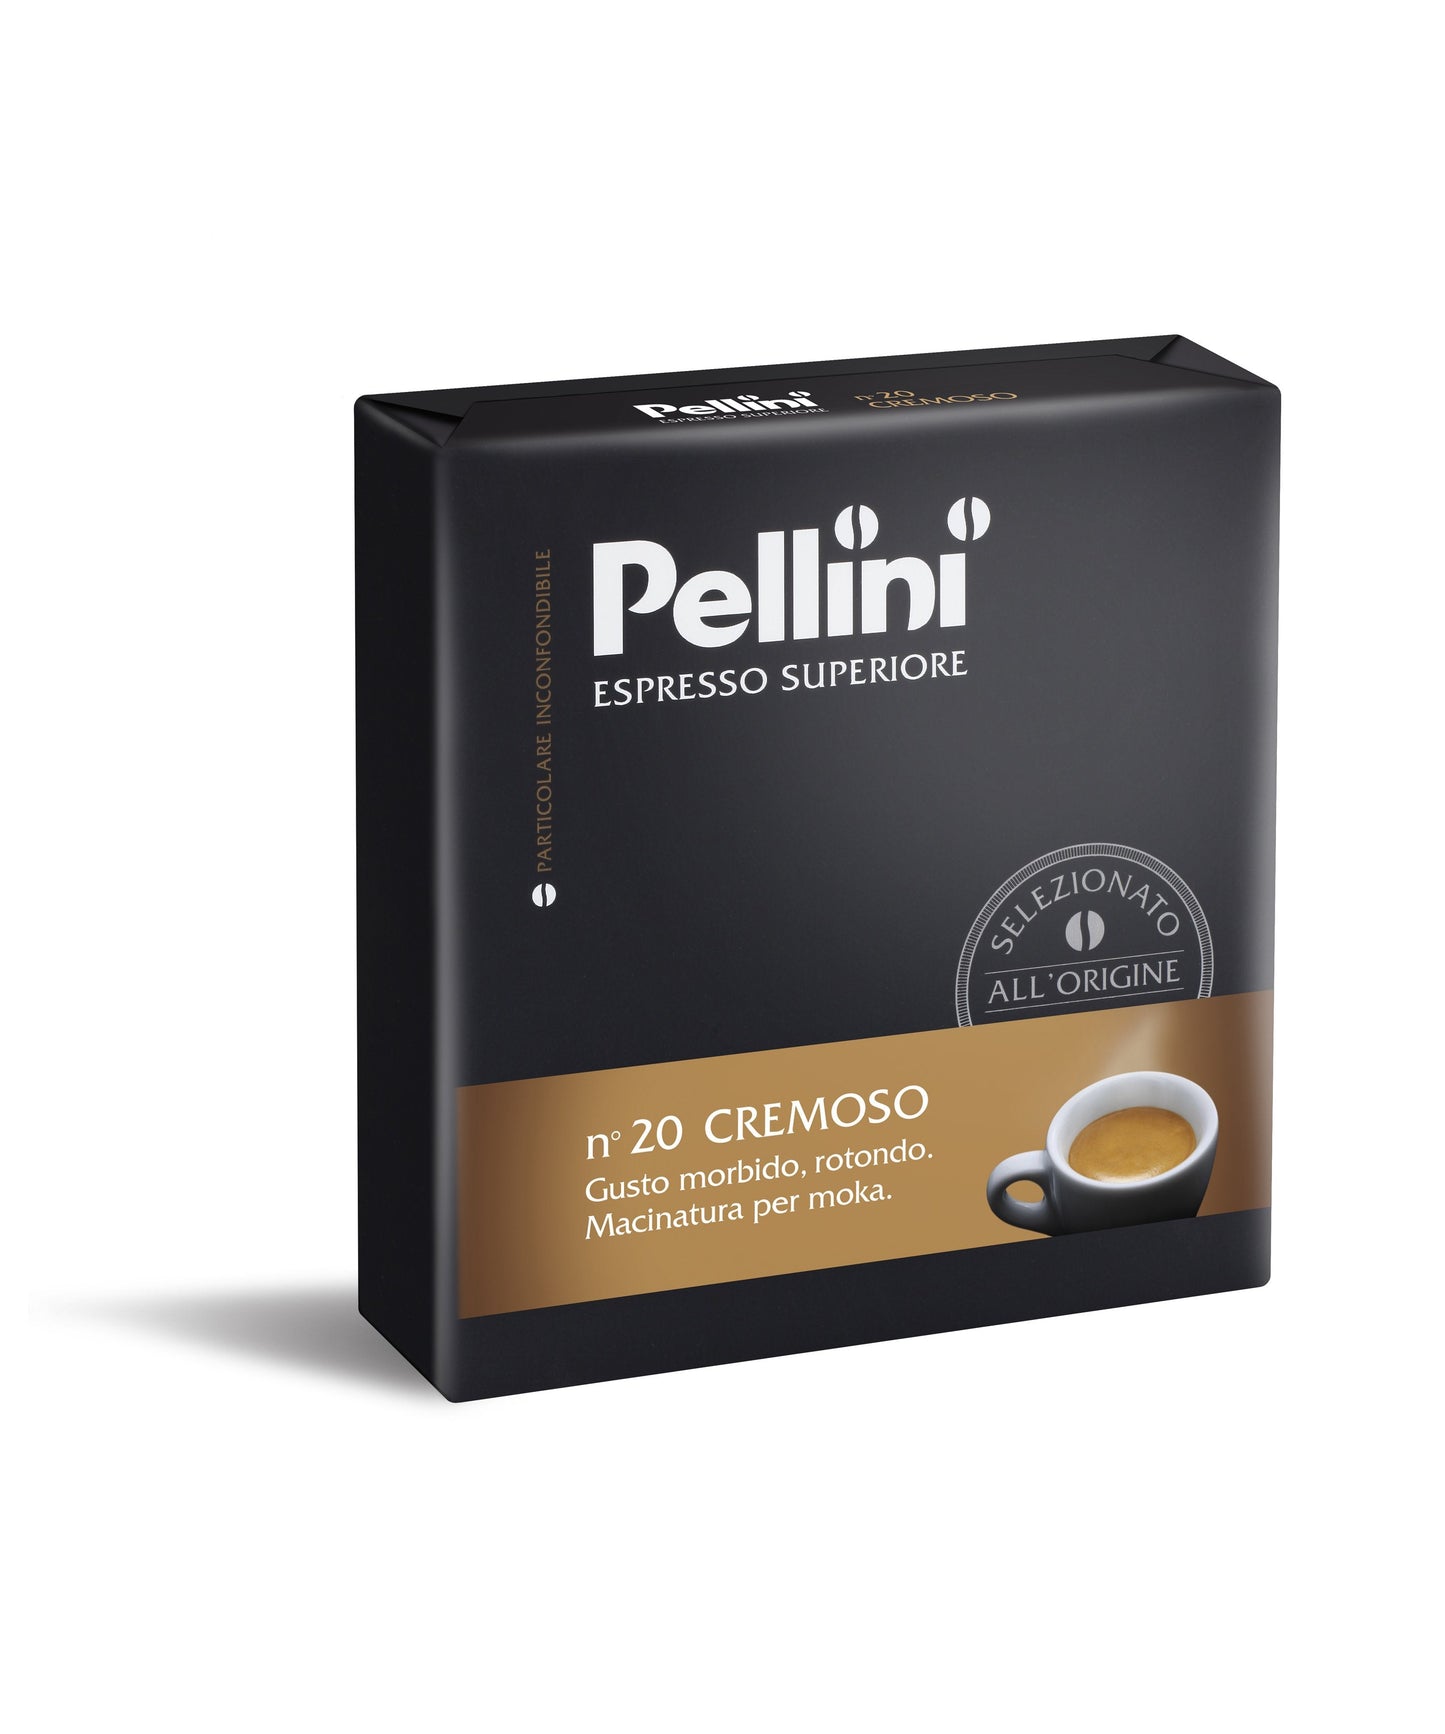 Pellini Espresso Superiore for Moka pot, N. 20 Cremoso